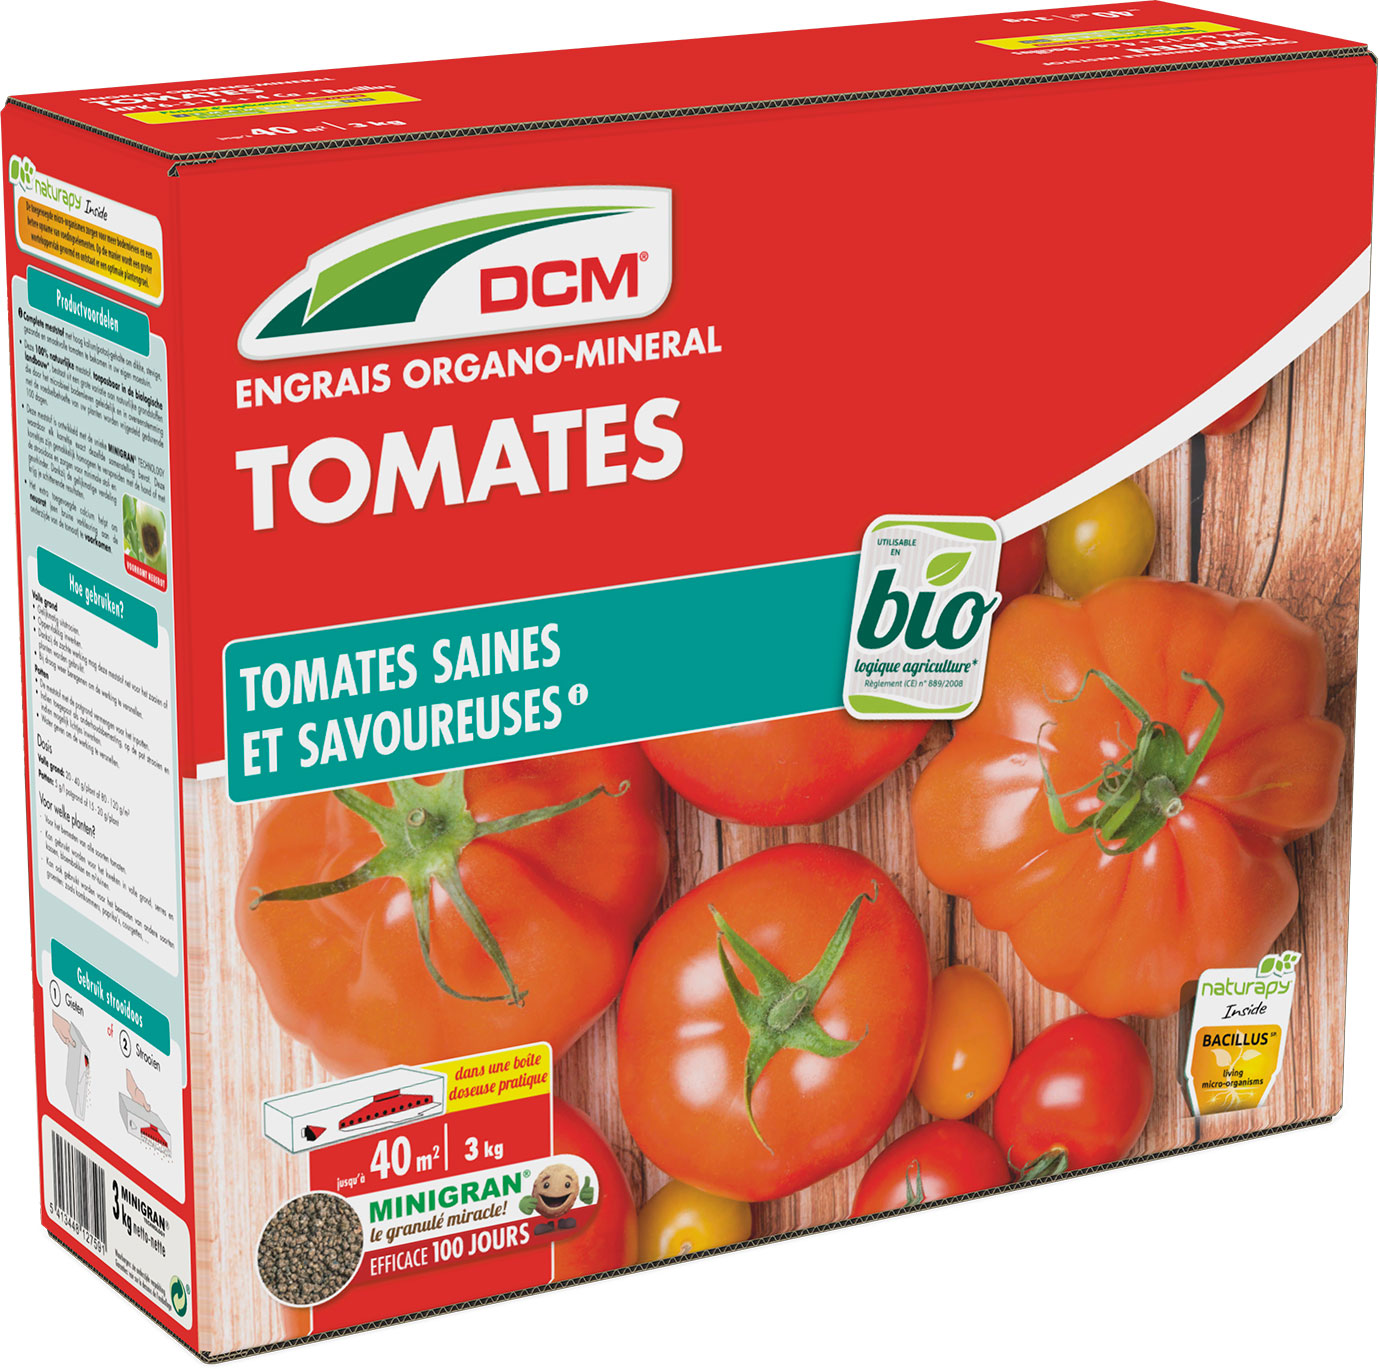 Engrais pour pied de tomates - Sachet de 750g - Limaces